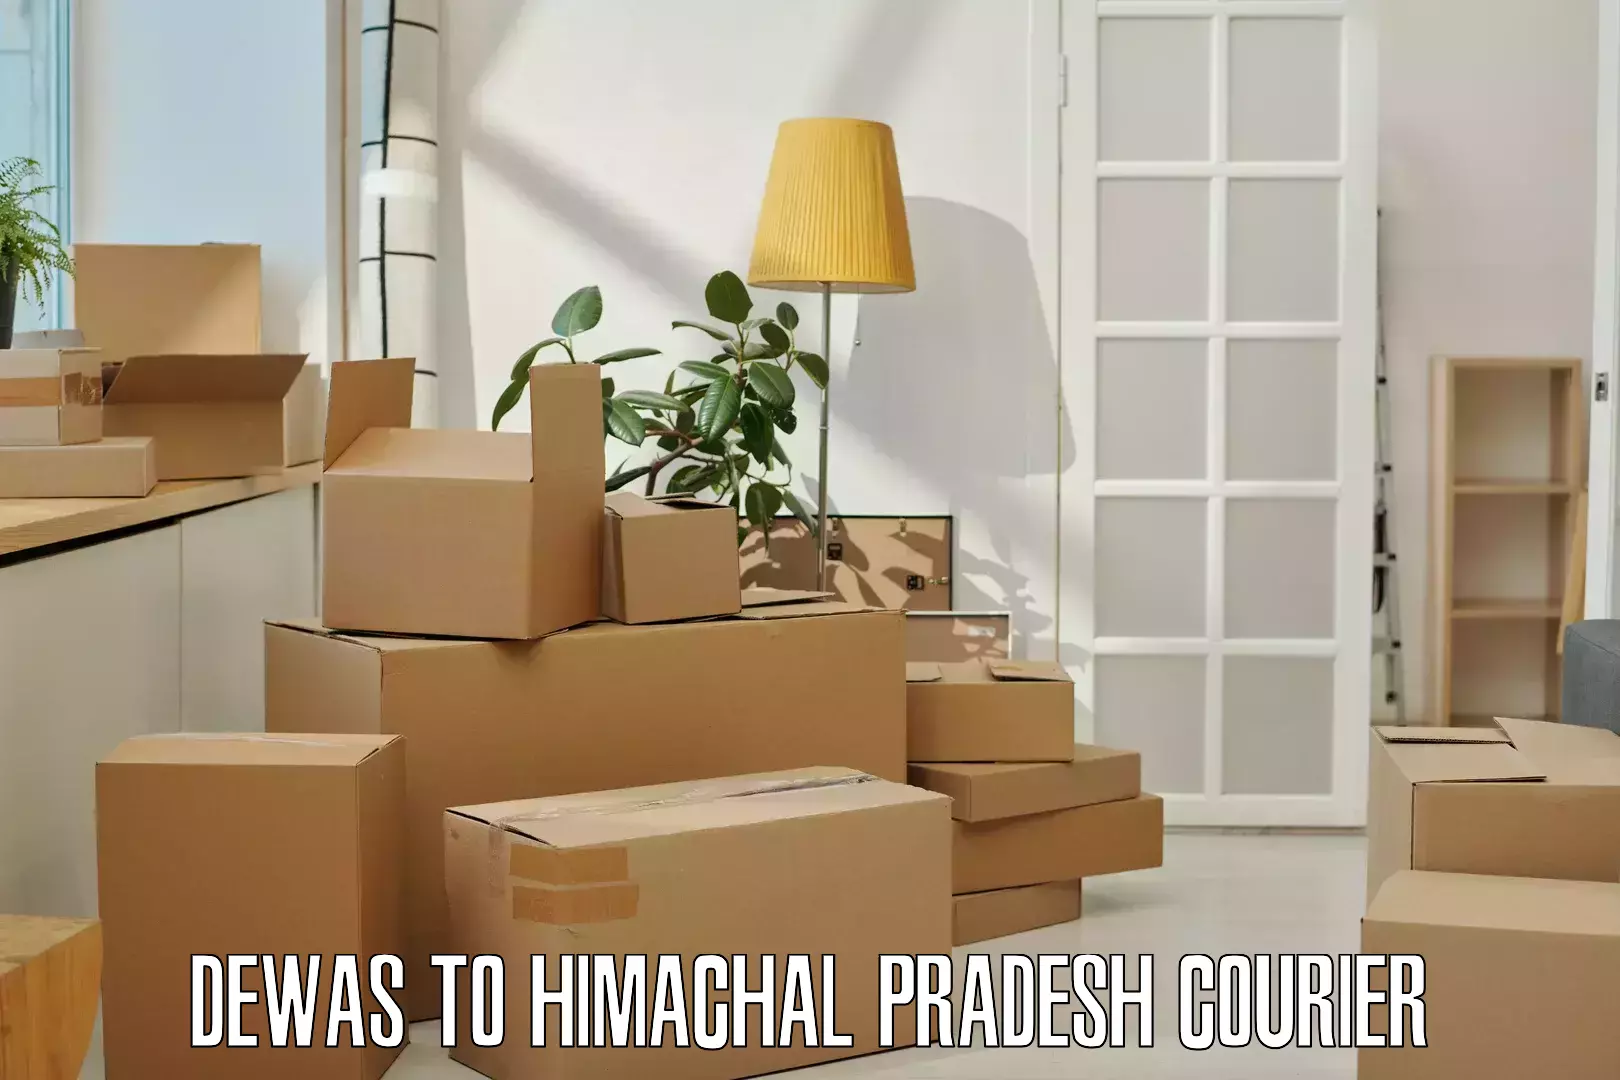 Efficient parcel delivery Dewas to Himachal Pradesh